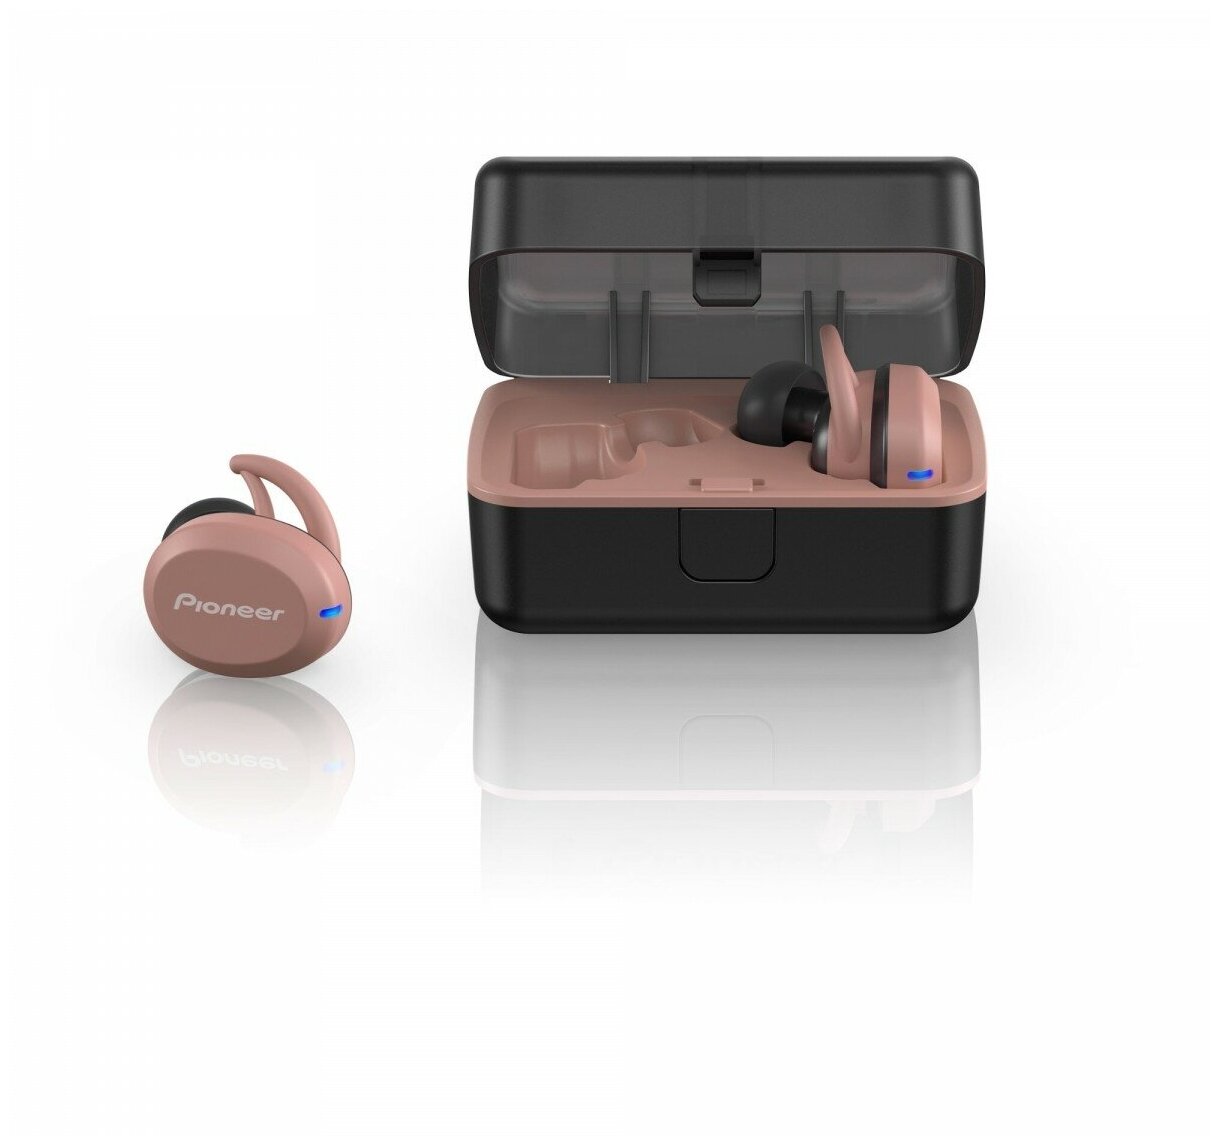 Гарнитура Pioneer вкладыши розовый/черный беспроводные bluetooth в ушной раковине